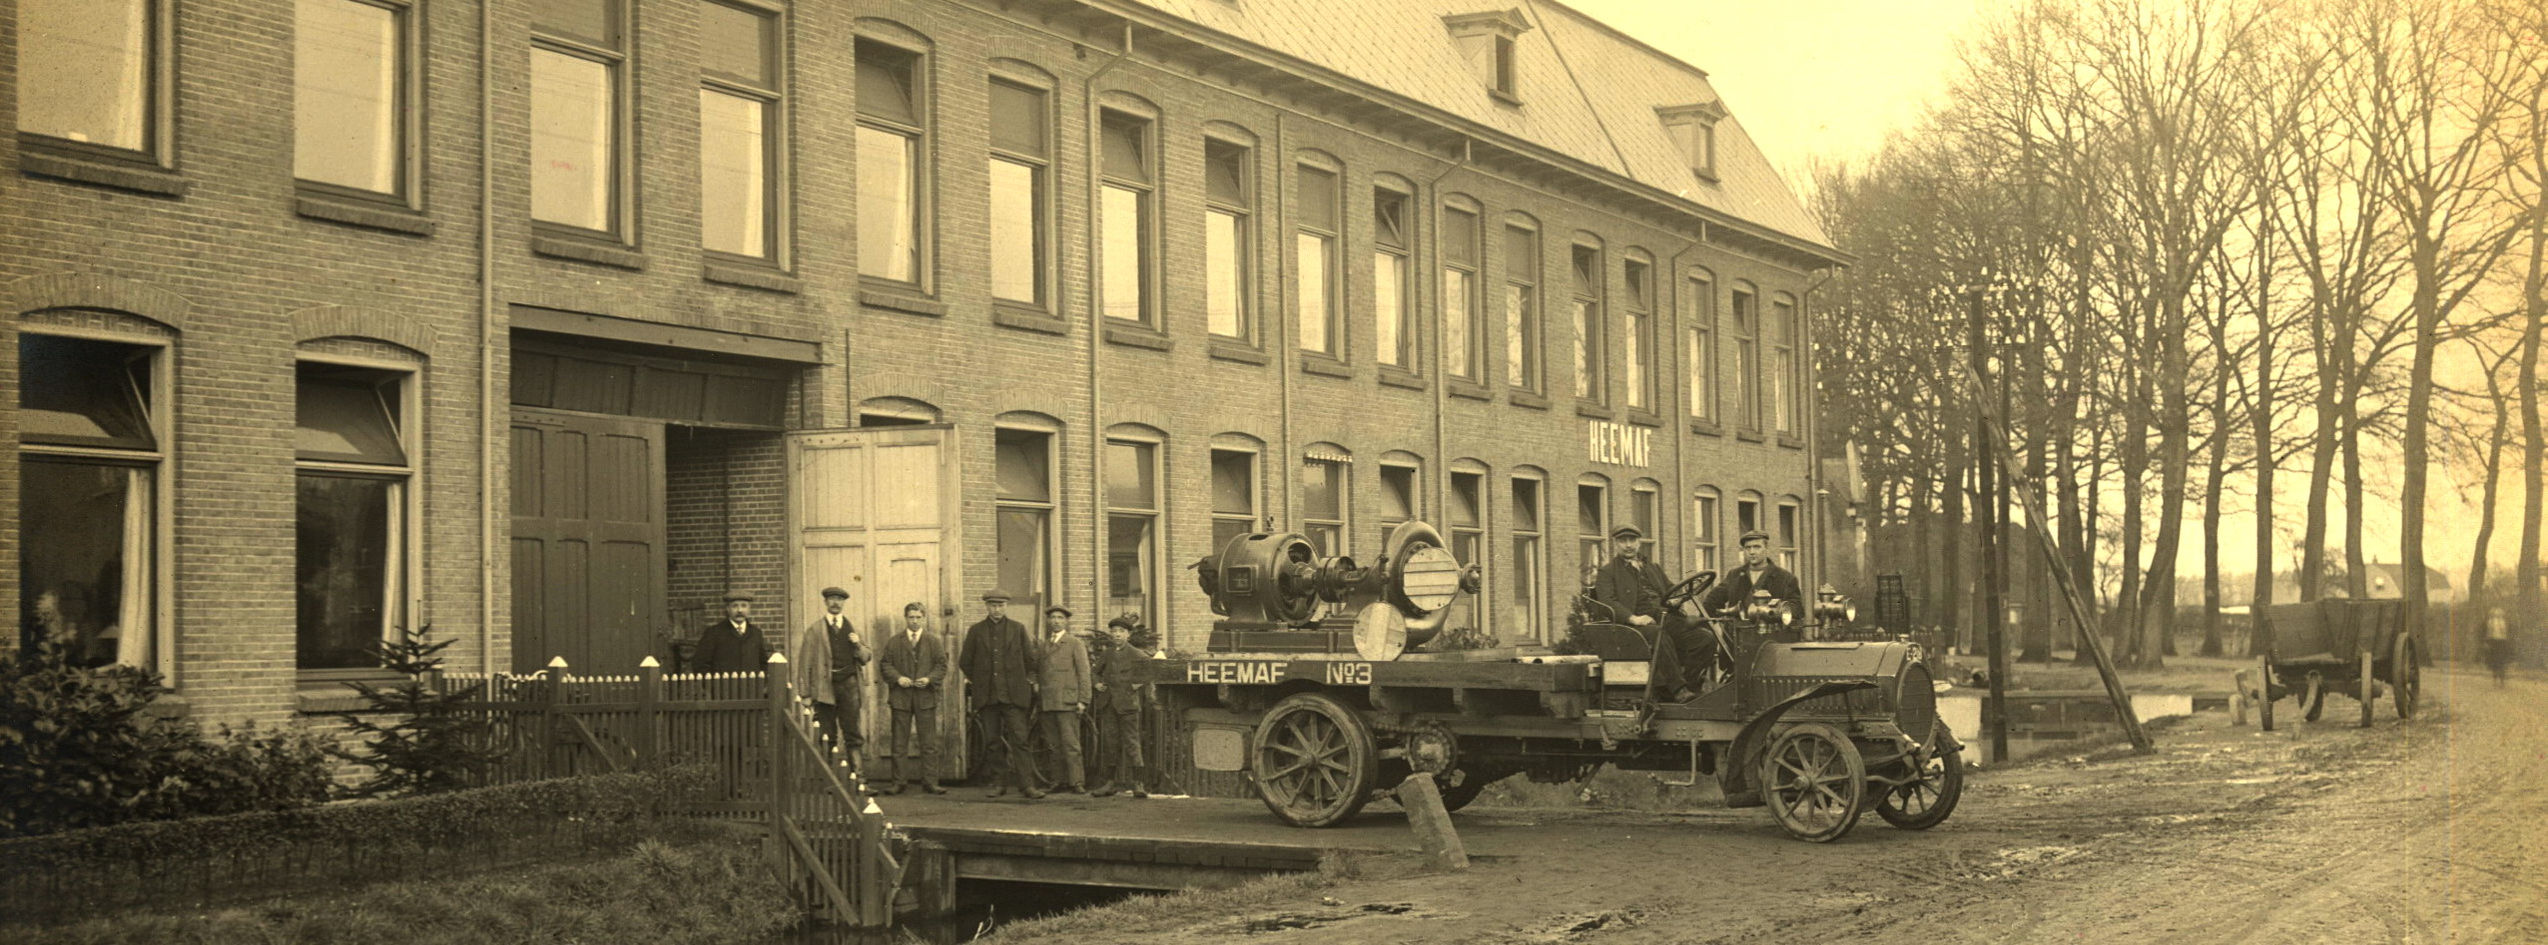 Nieuwe Heemaf fabriek (1900)